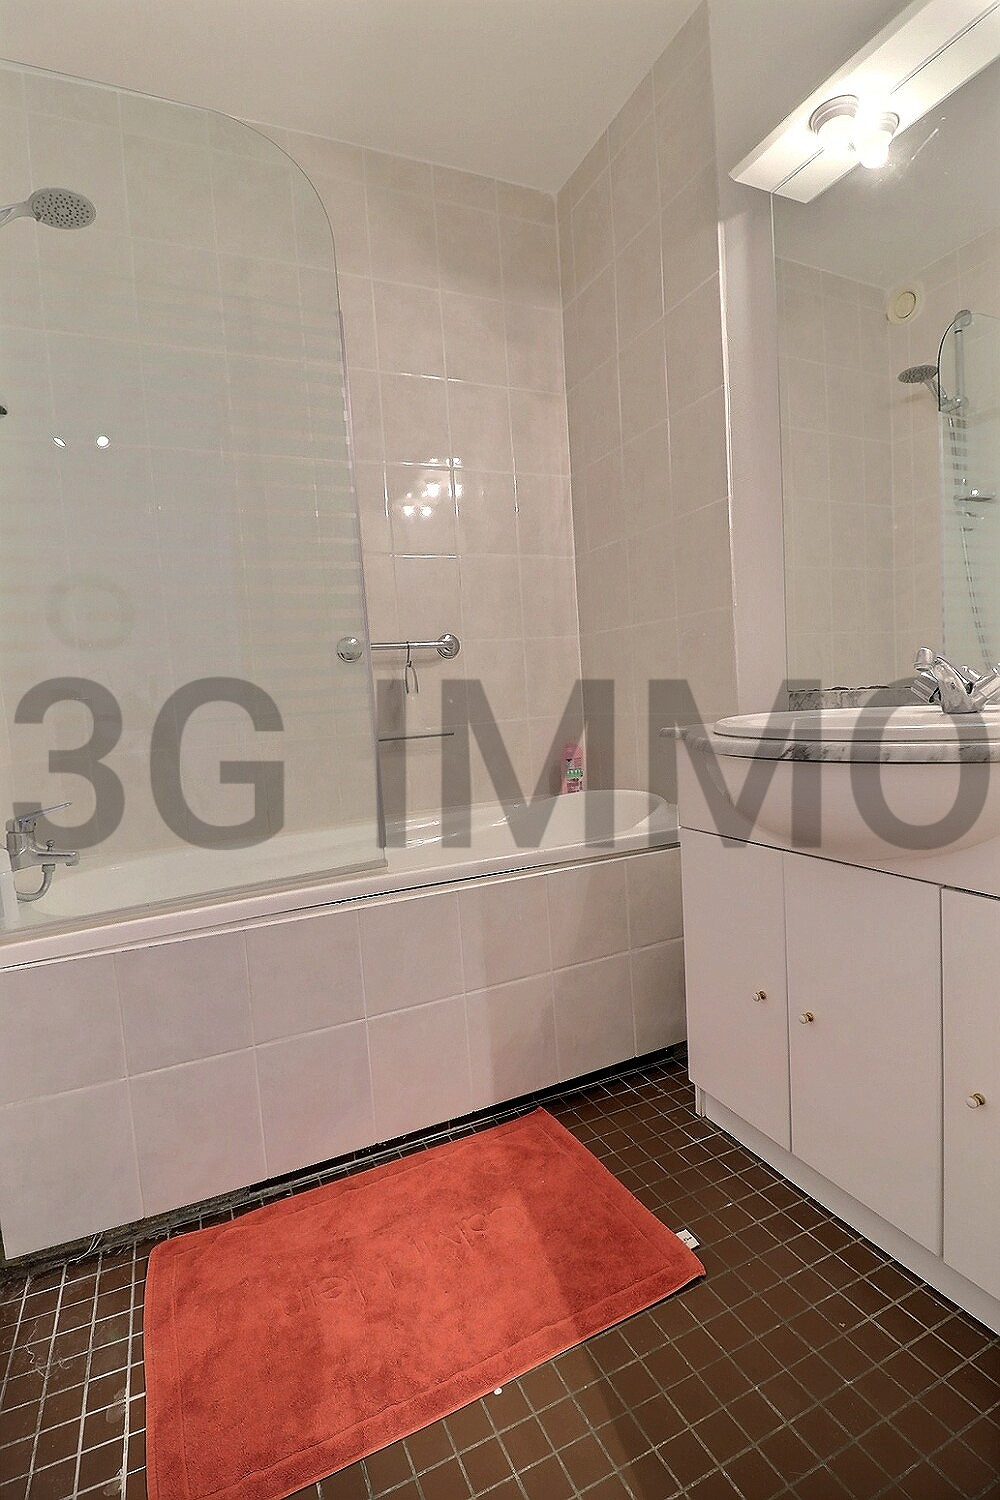 Photo mobile 9 | Deauville (14800) | Appartement de 52.51 m² | Type 3 | 362000 € |  Référence: 182294PG